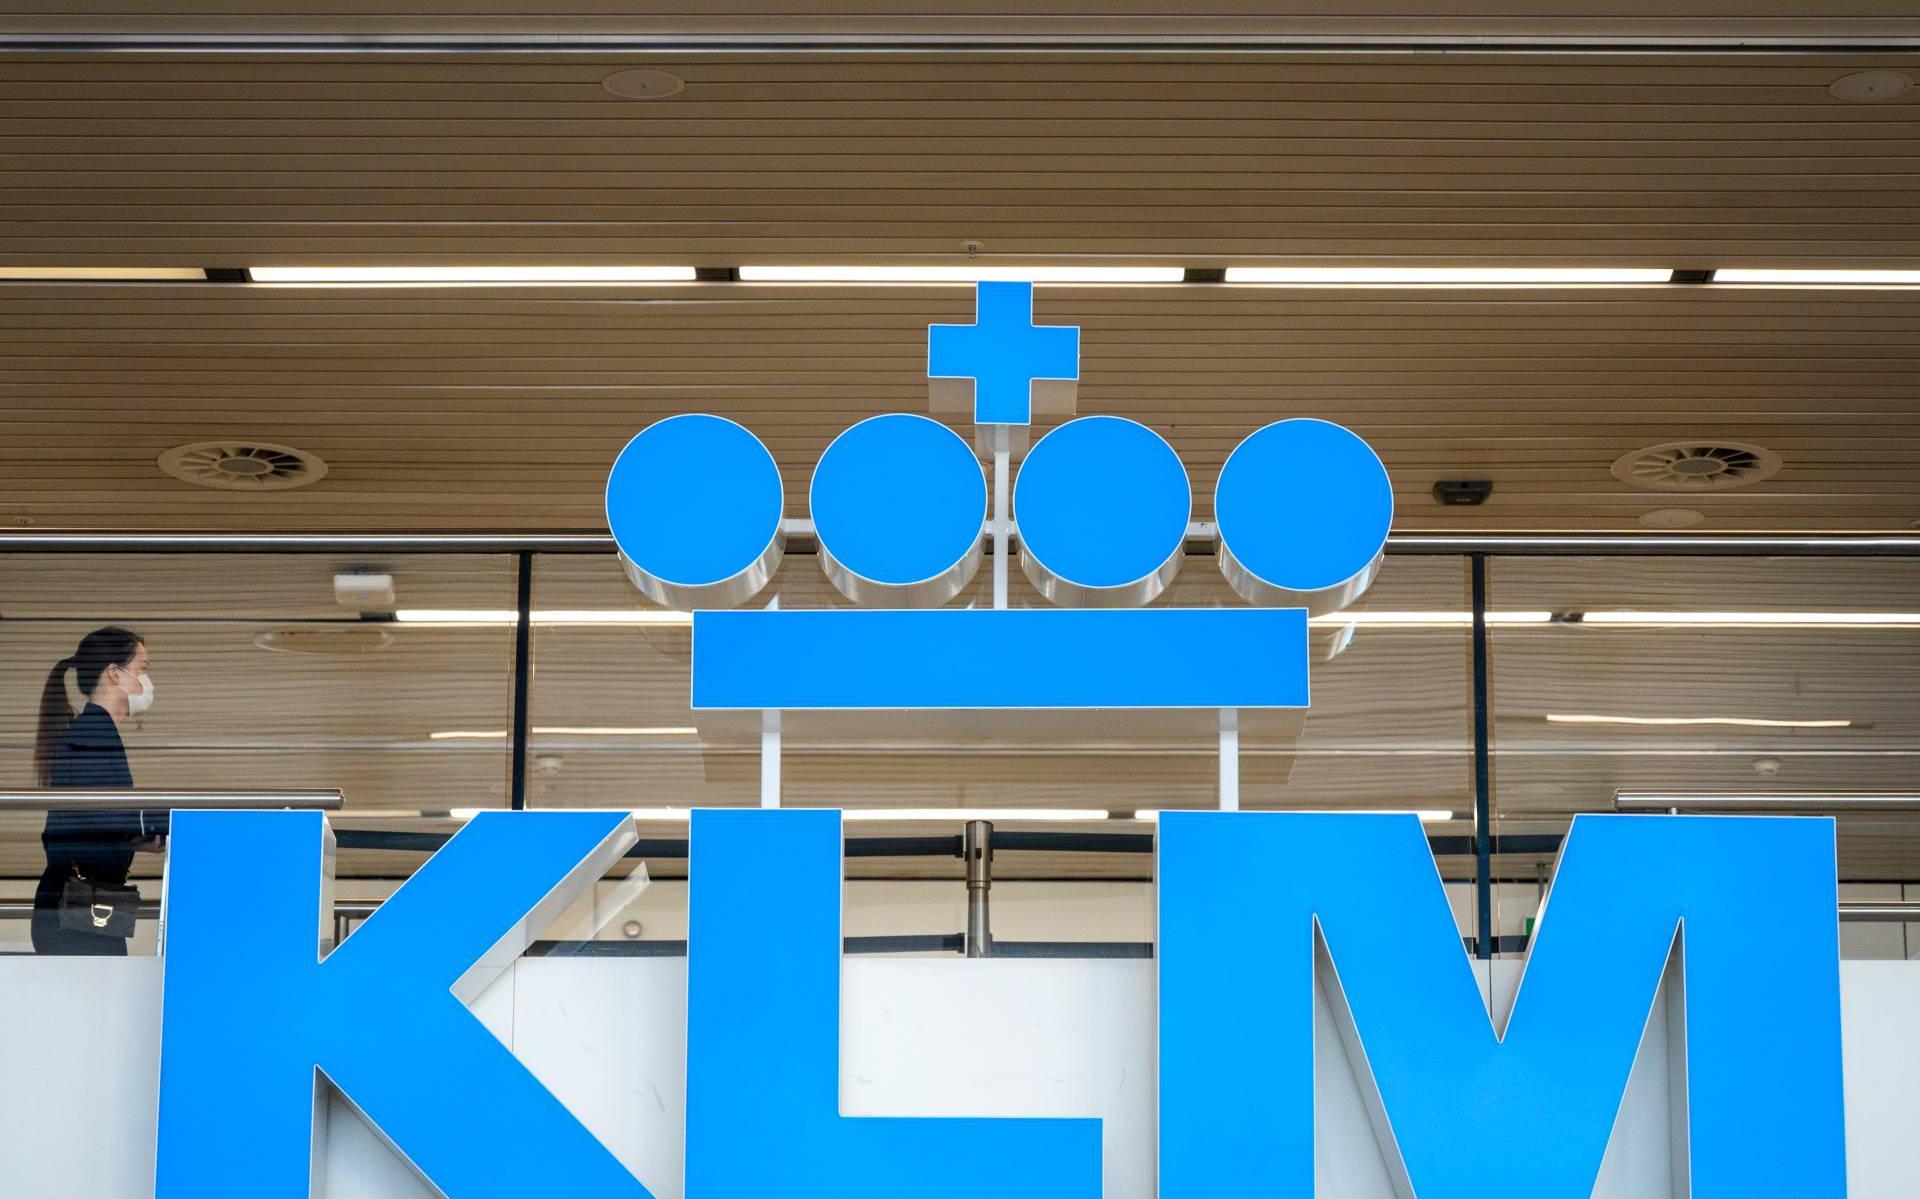 Deel grondbonden KLM niet akkoord met nieuwe pensioenregeling